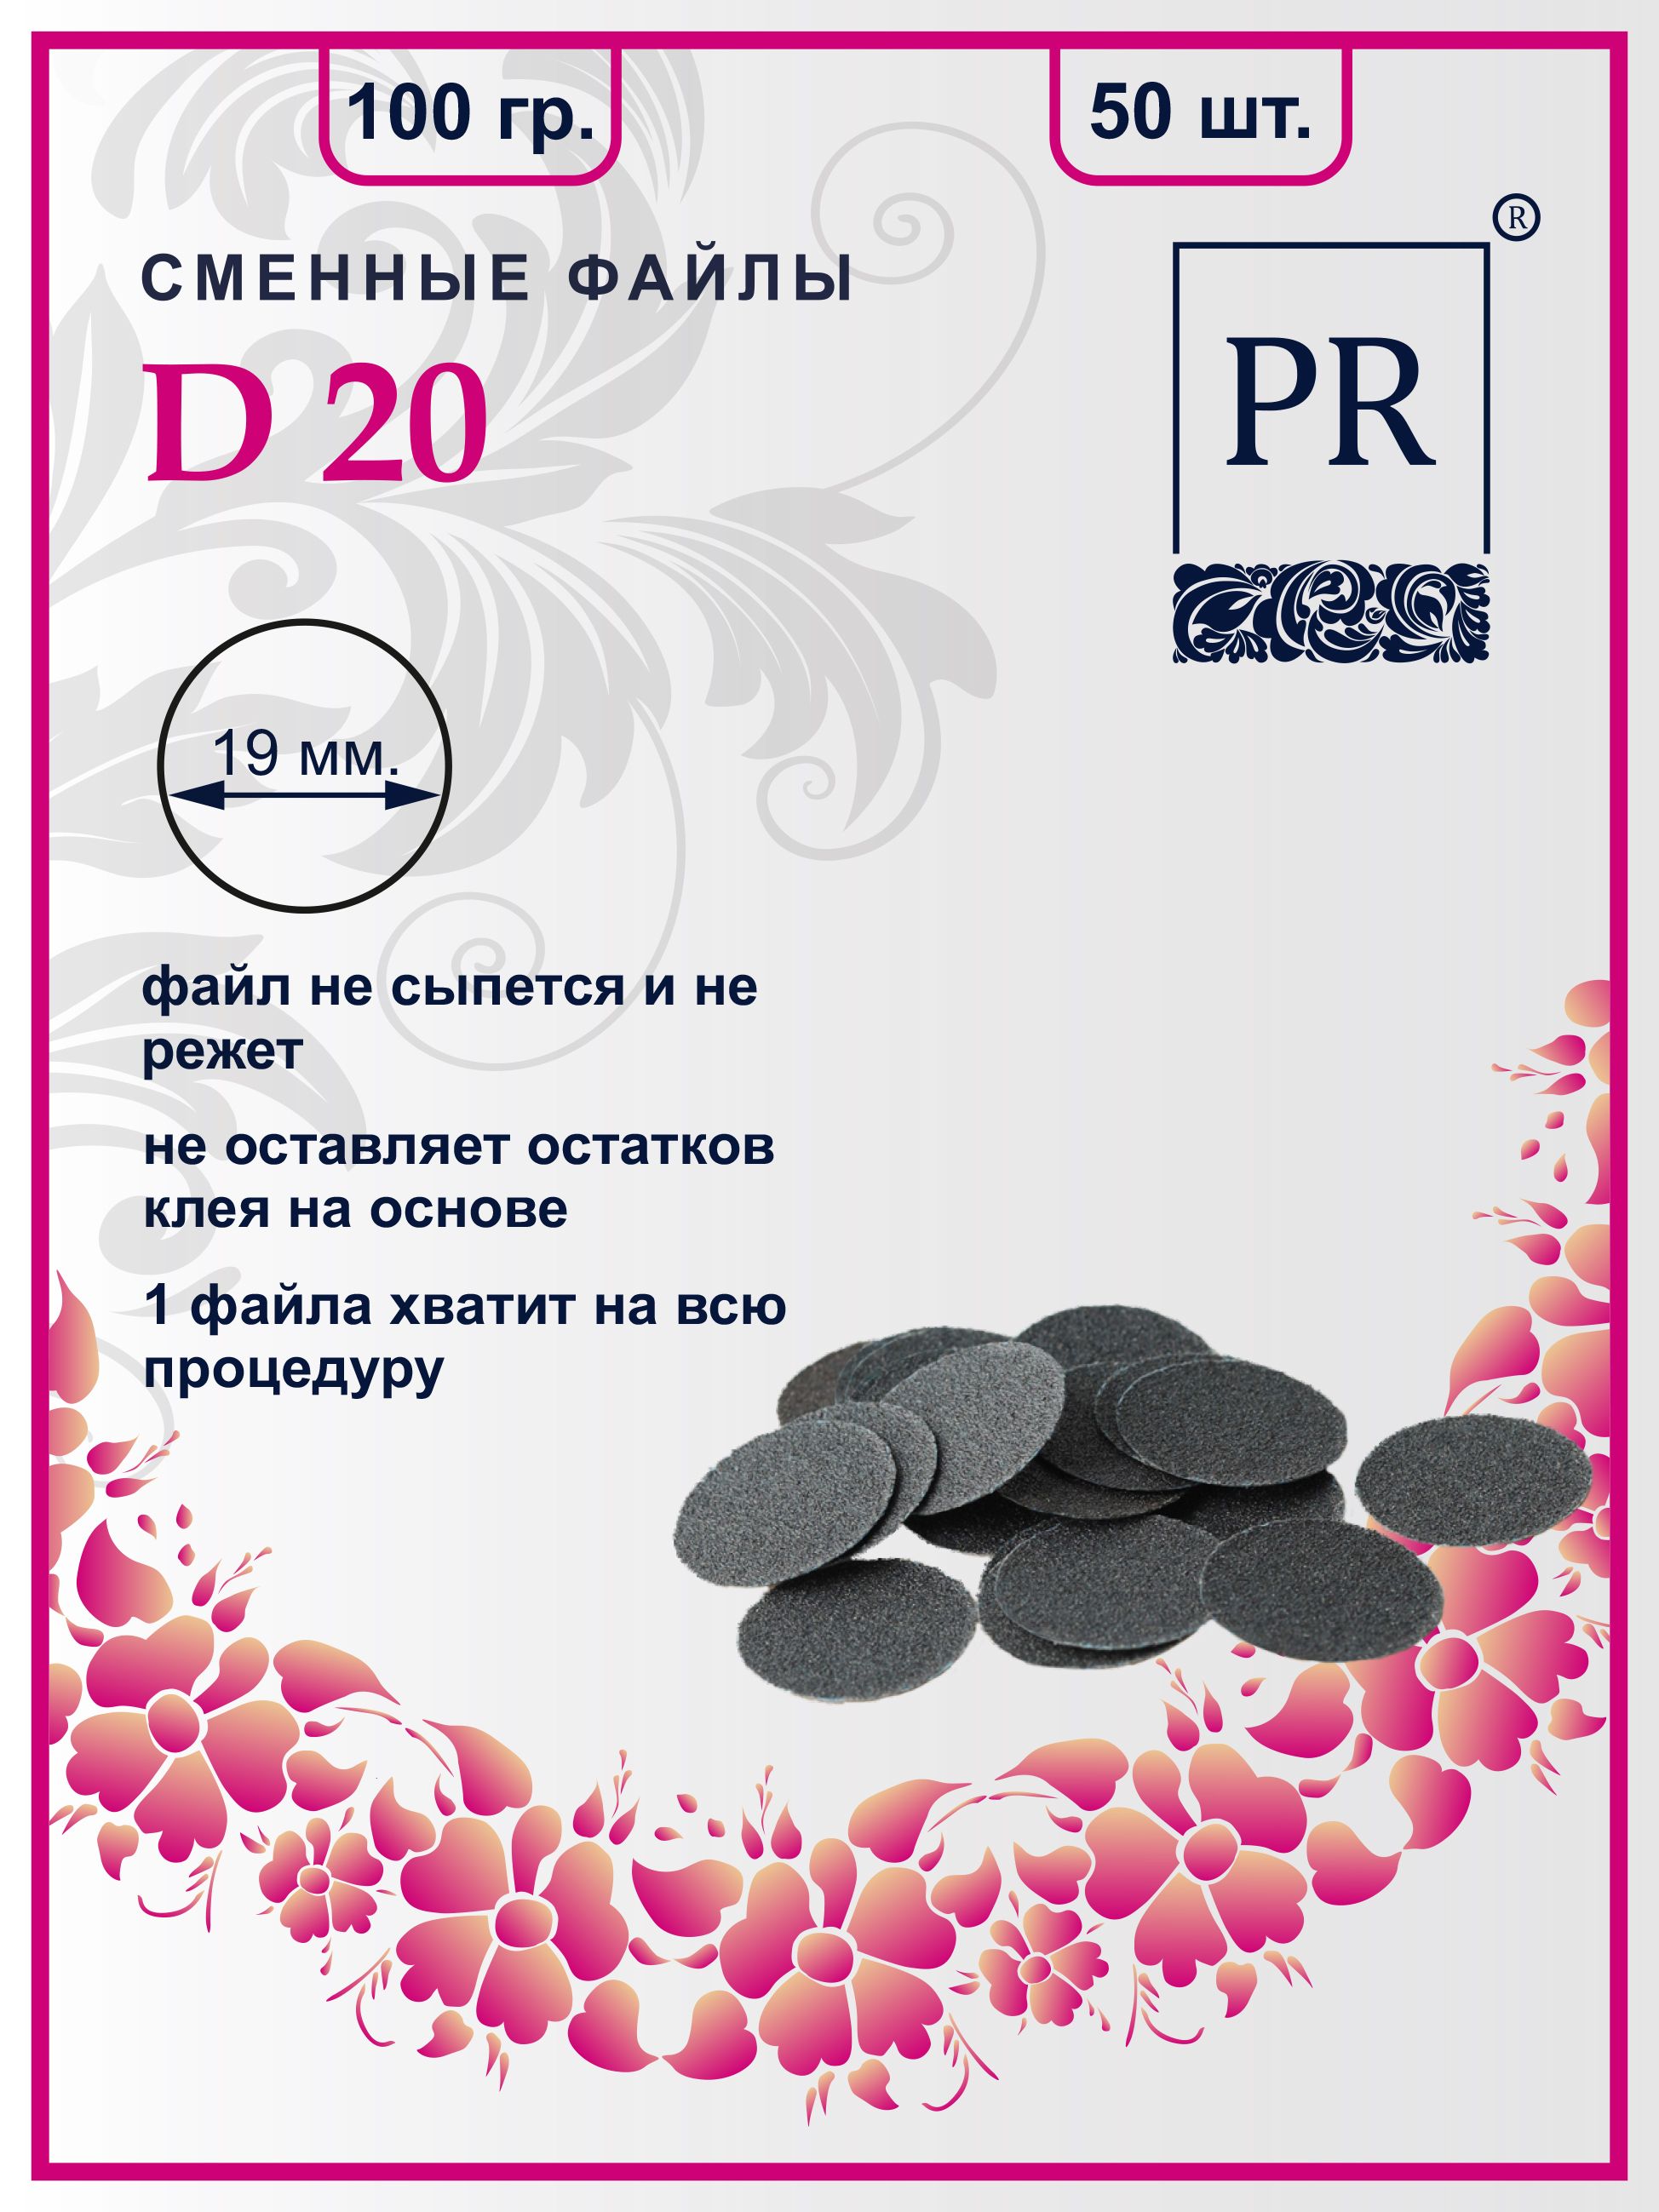 Сменные файлы Pilochki Russia диски для педикюра для диска М 100 грит 50 штук